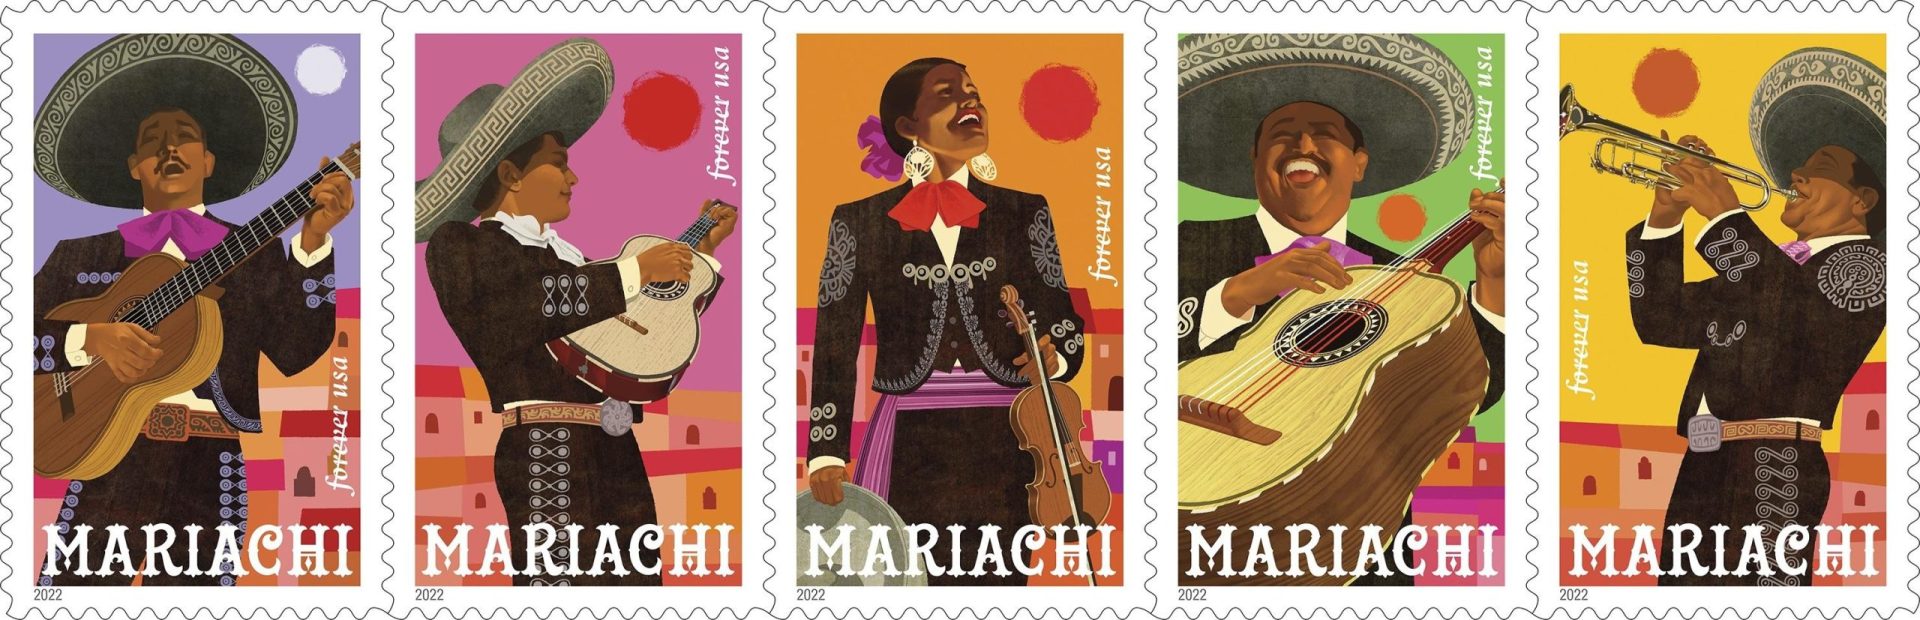 El arte mexicano del mariachi es el protagonista de los sellos estadounidenses